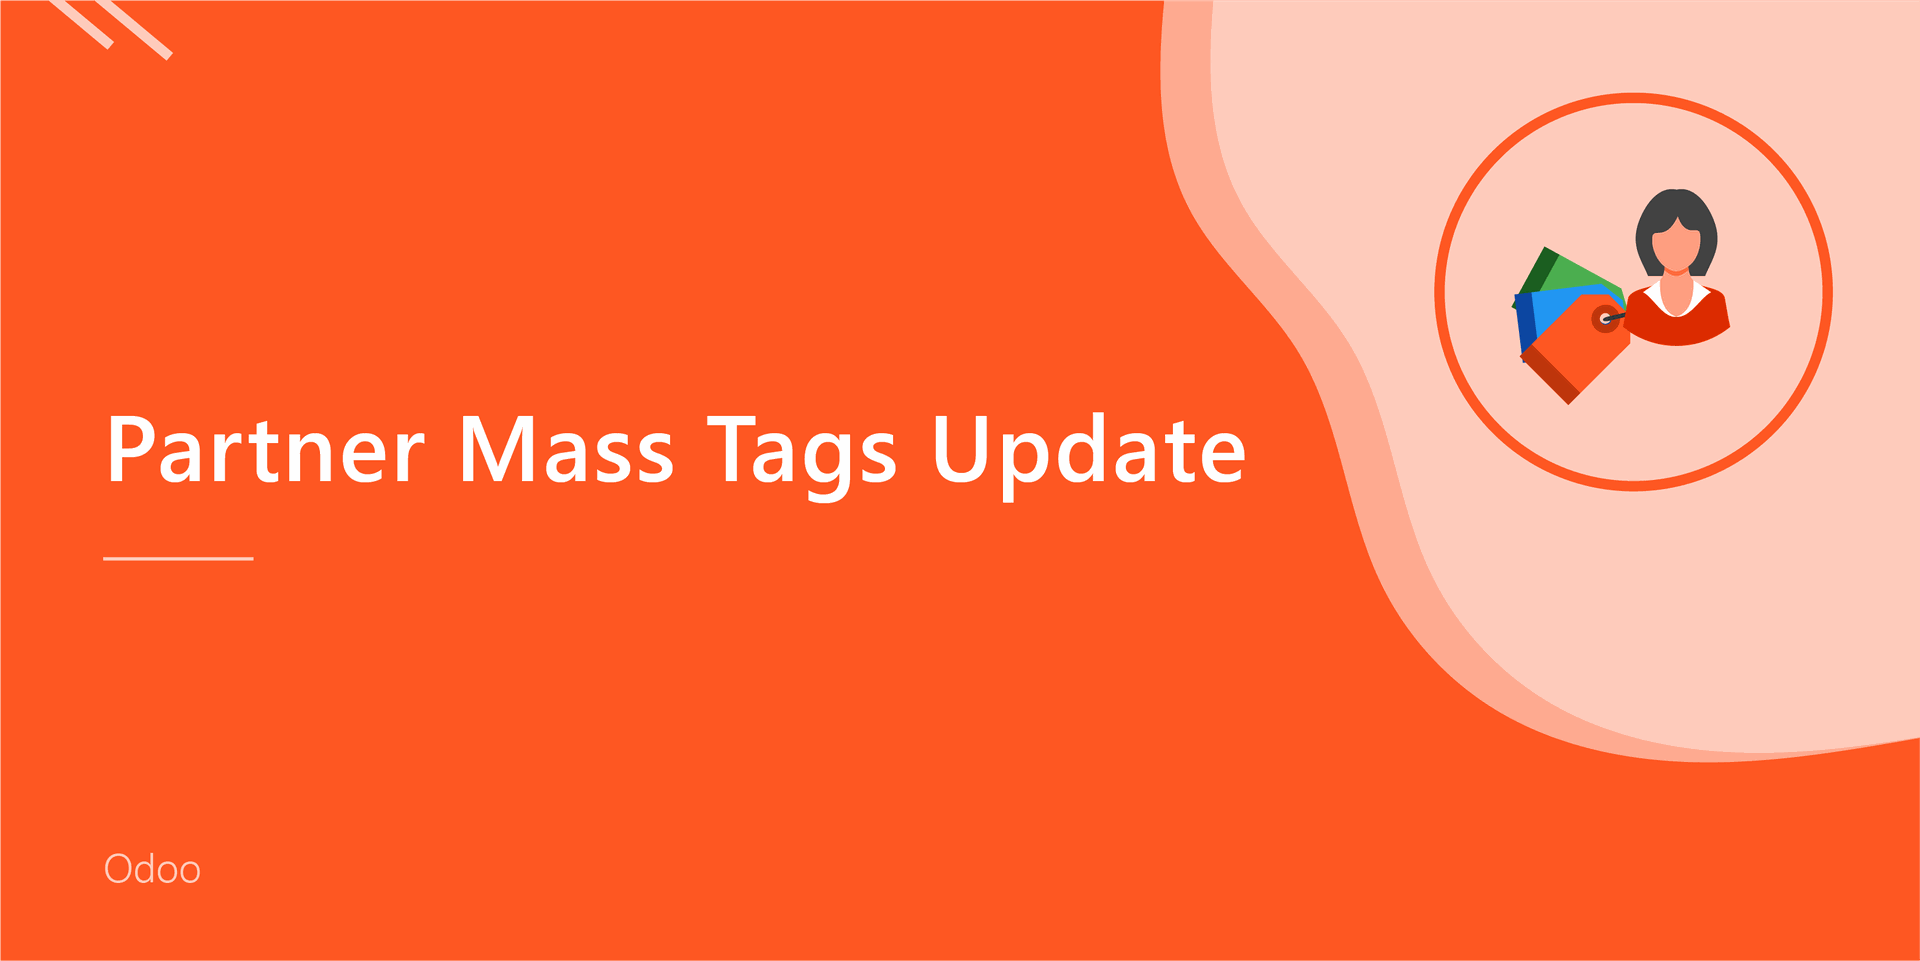 Partner Mass Tags Update
